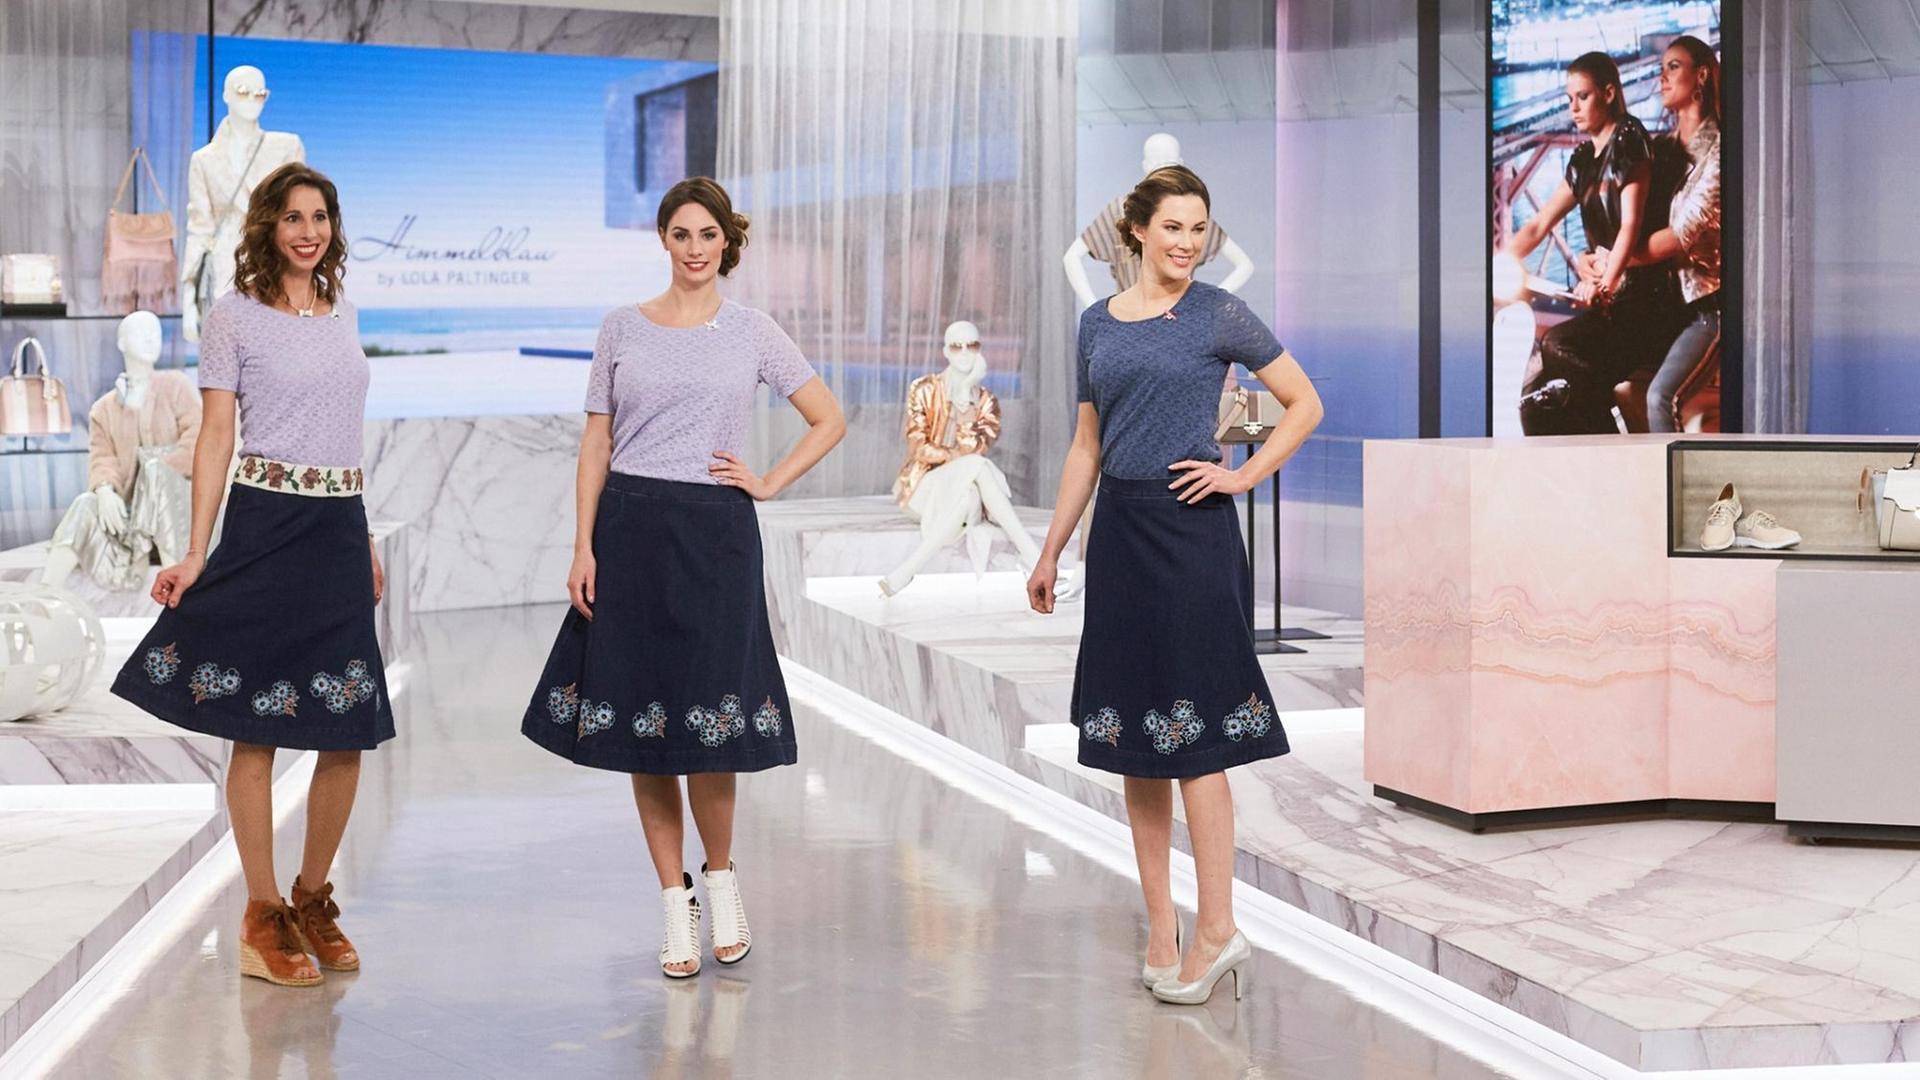 Die Modedesignerin Lola Paltinger (li.) präsentiert auf dem Shopping-Kanal HSE24 mit zwei Fotomodels ihre Kollektion